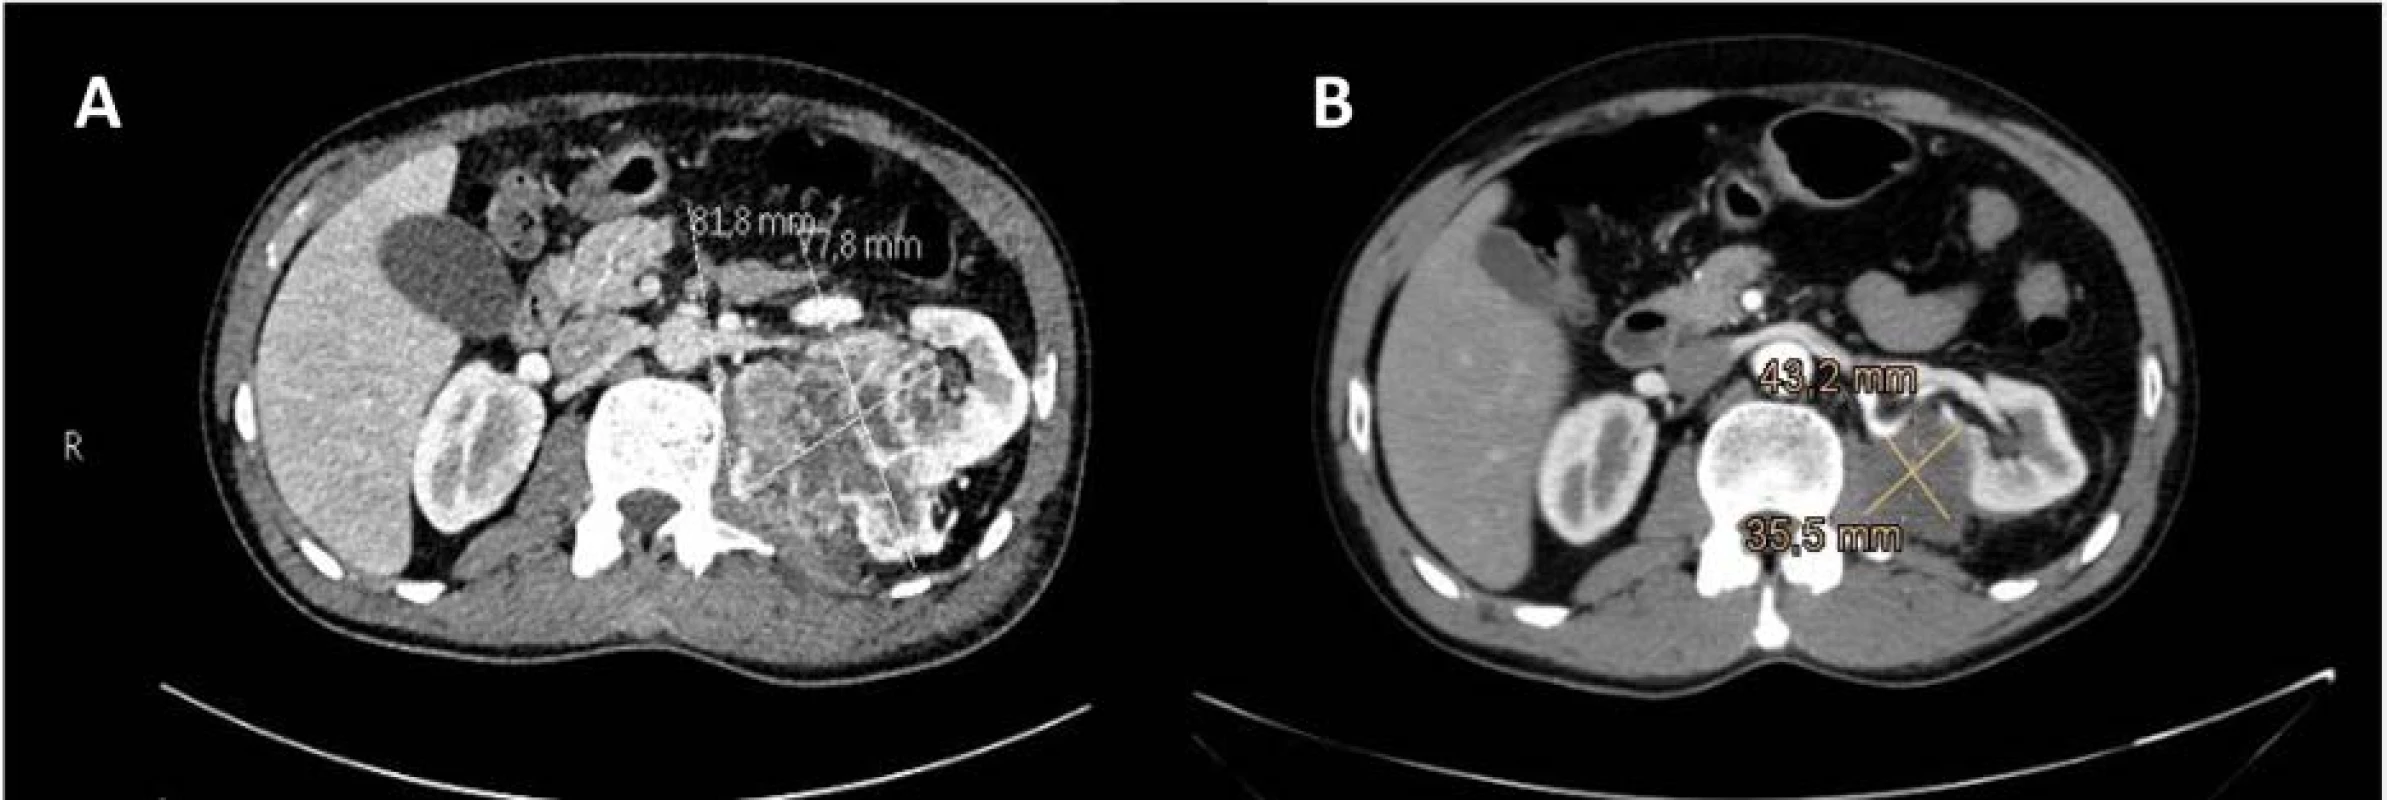 CT vyšetření ledvin se zobrazením primárního nádoru levé ledviny v době diagnózy (A); kontrolní CT vyšetření
po tříměsíční léčbě sunitinibem prokázala výraznou regresi primárního nádoru, bez sycení tkáně; denzita odpovídala
fibrotické tkáni, centrálně pak nekróze (B)<br>
Fig. 2. CT scan of the kidneys showing primary left kidney tumor at the time of diagnosis (A). Control CT examinations
after three months of sunitinib treatment showed significant regression of the primary tumor, without
tissue enhancement. The density corresponded to fibrotic tissue with central necrosis (B).